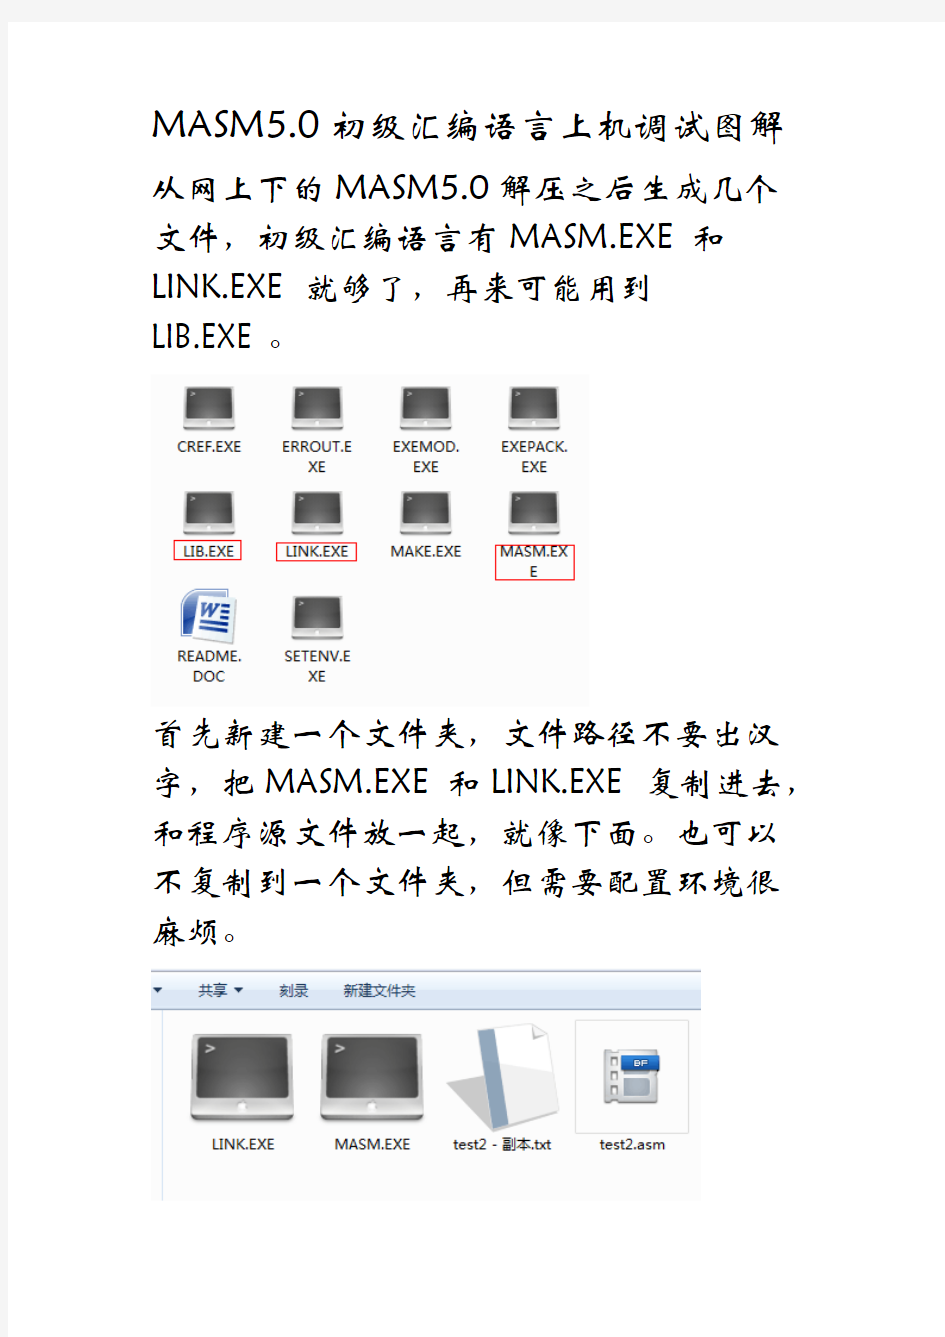 (完整版)初级汇编程序上机图文教程(MASM5.0),推荐文档